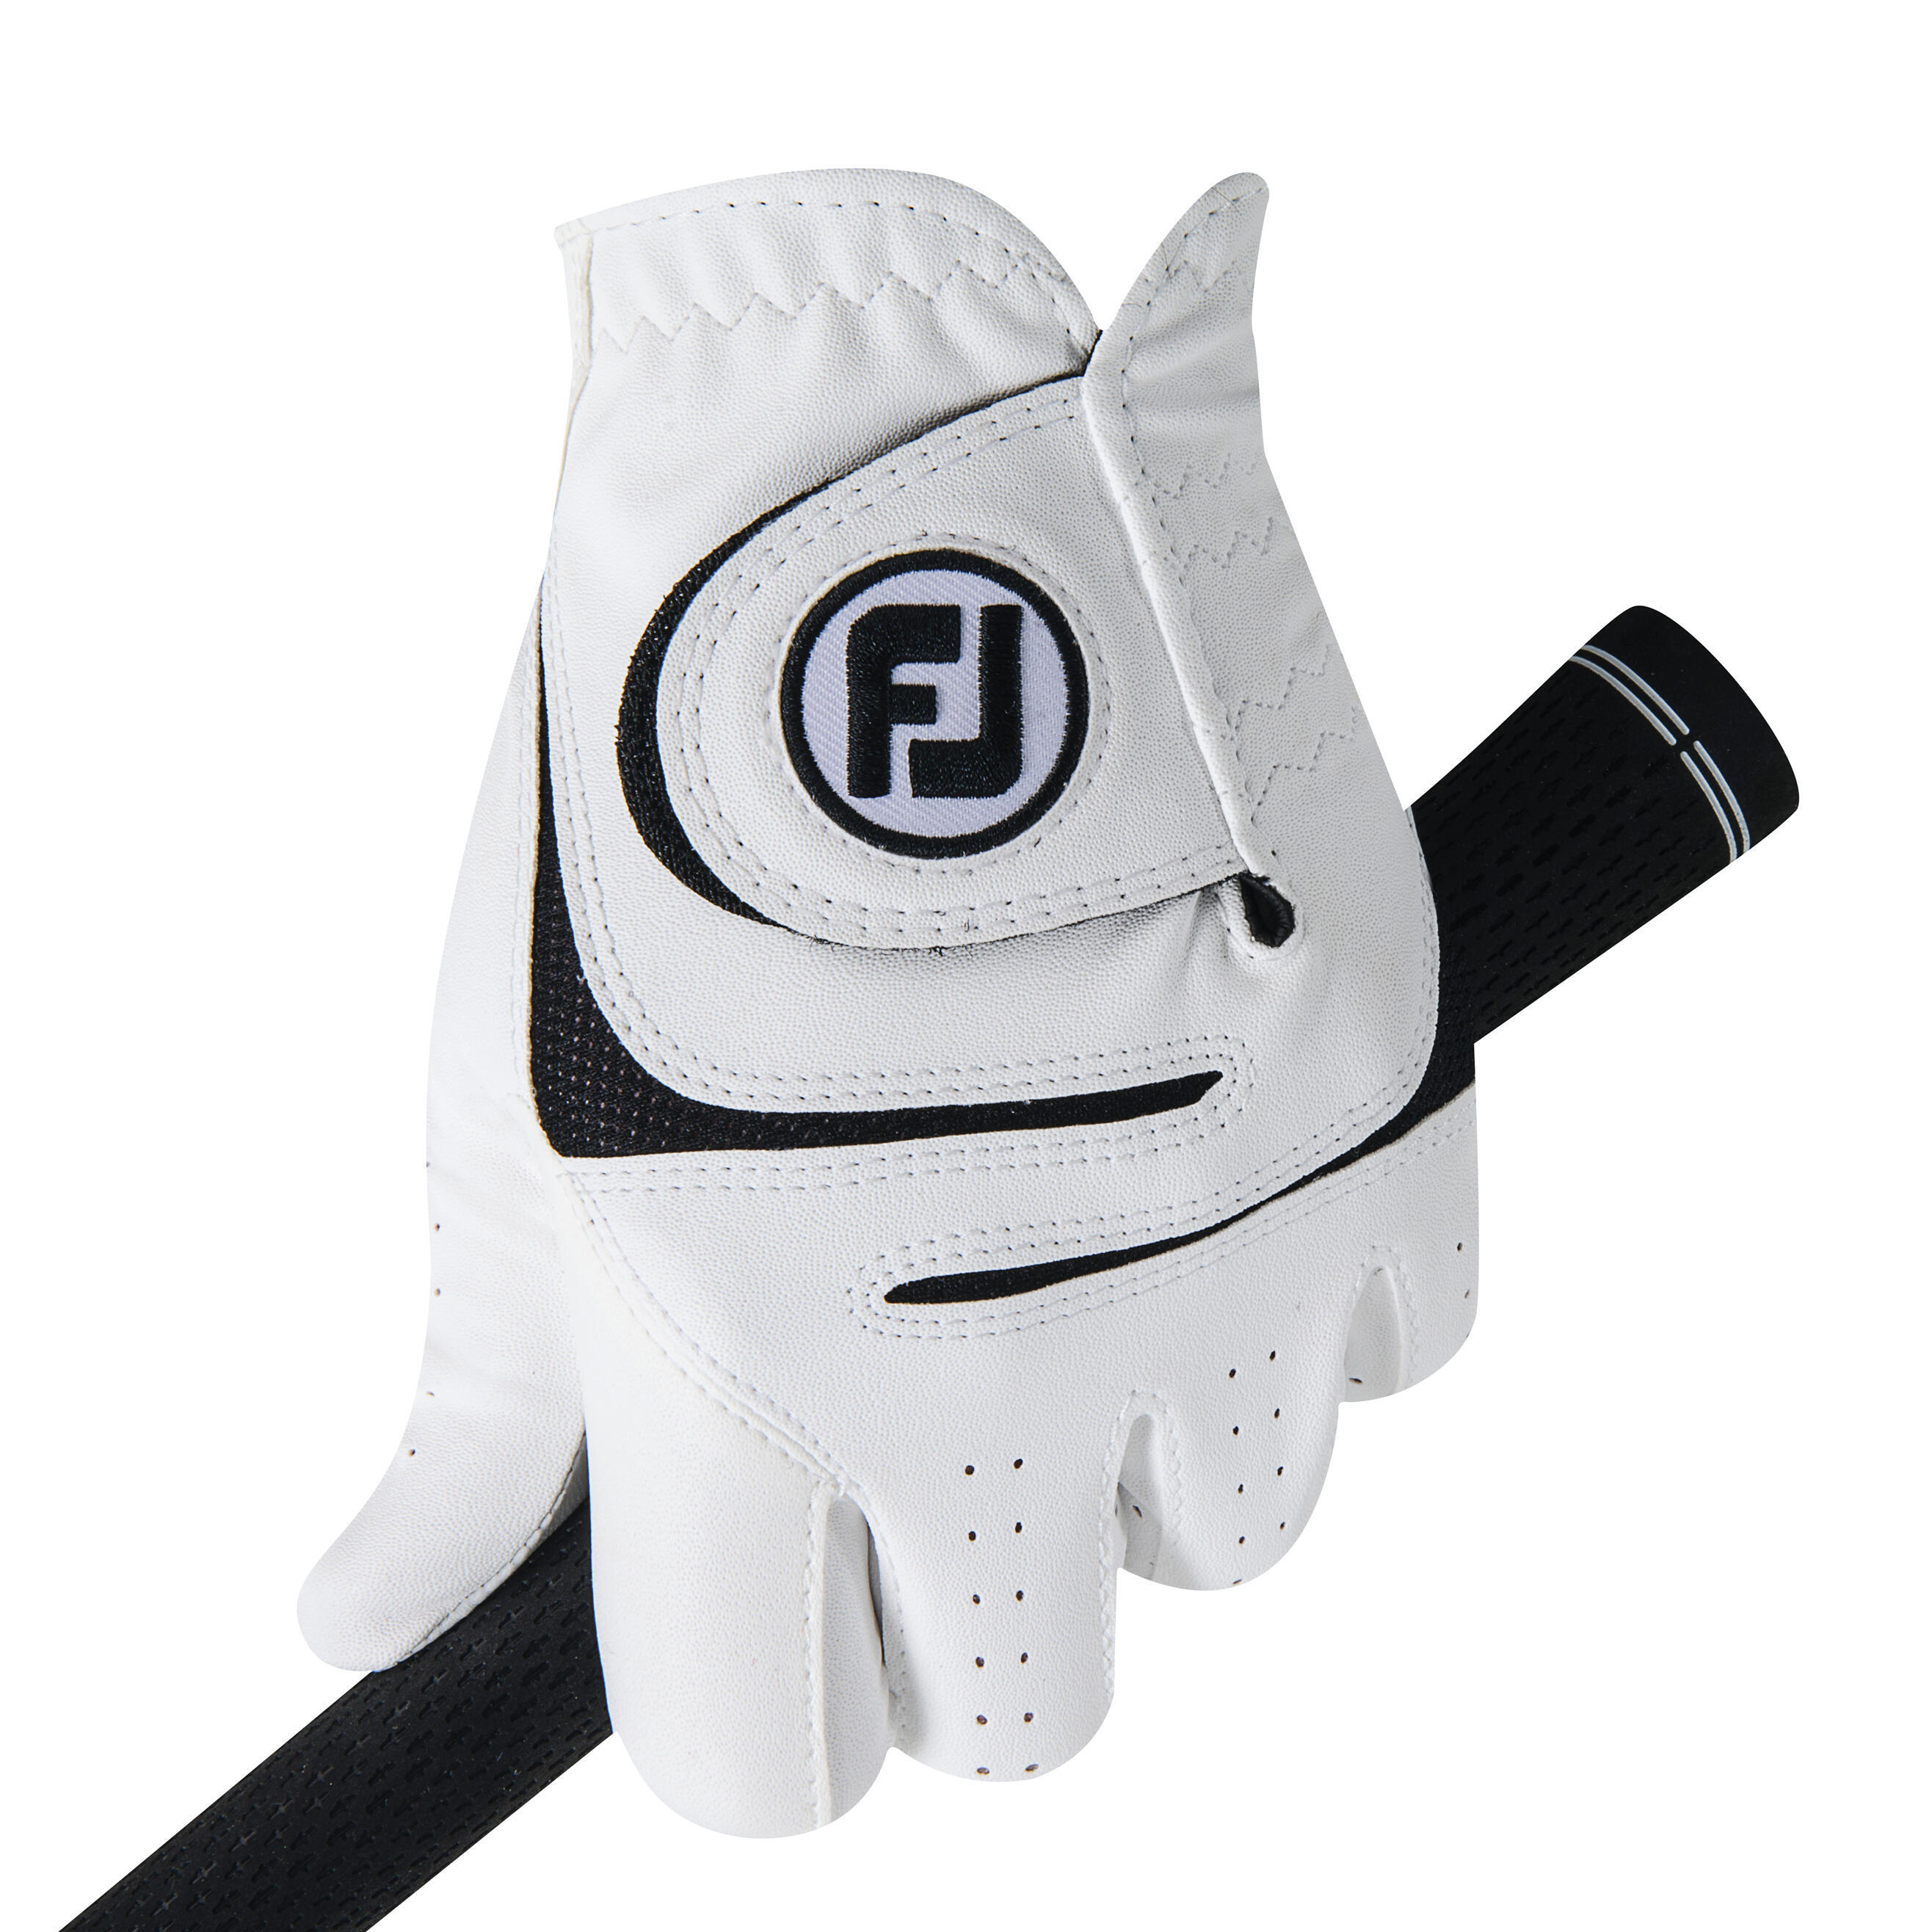 Перчатки для гольфа Weathersof RH мужские белые FOOTJOY kirkland signature golf gloves premium cabretta leather x large 4 count